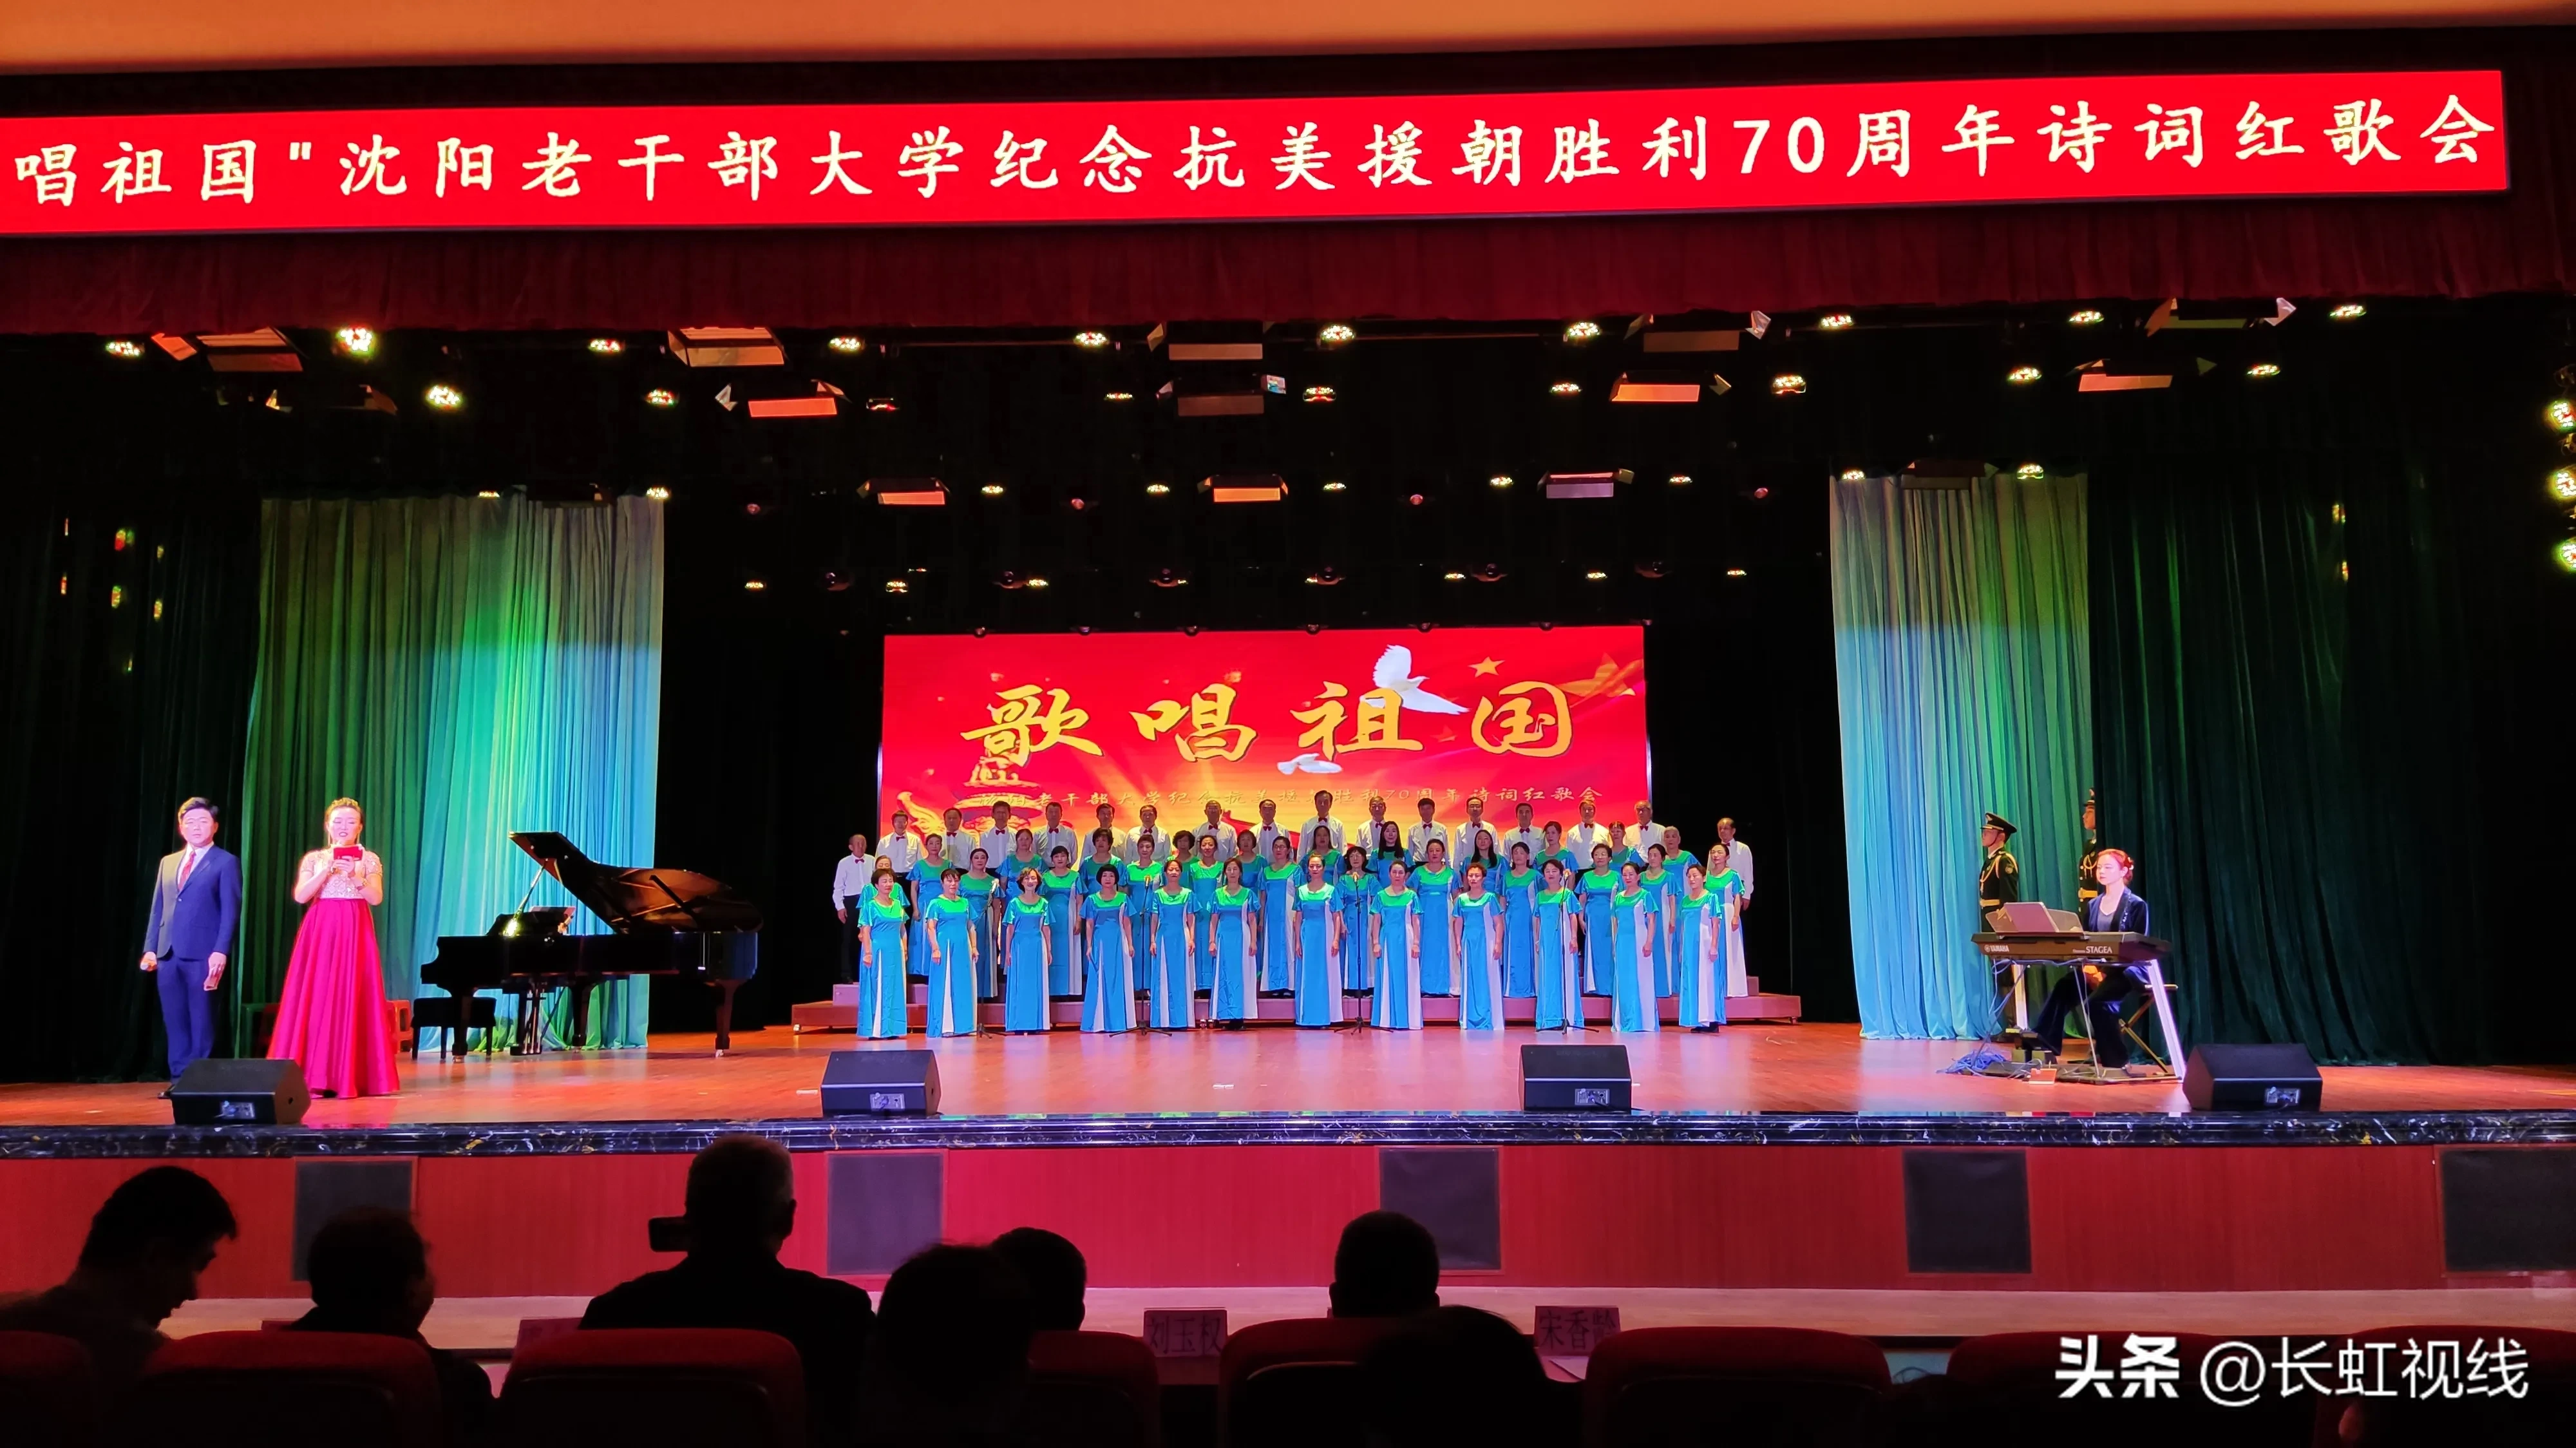 歌唱祖国沈阳老干部大学纪念抗美援朝胜利70周年红歌会在沈阳举行